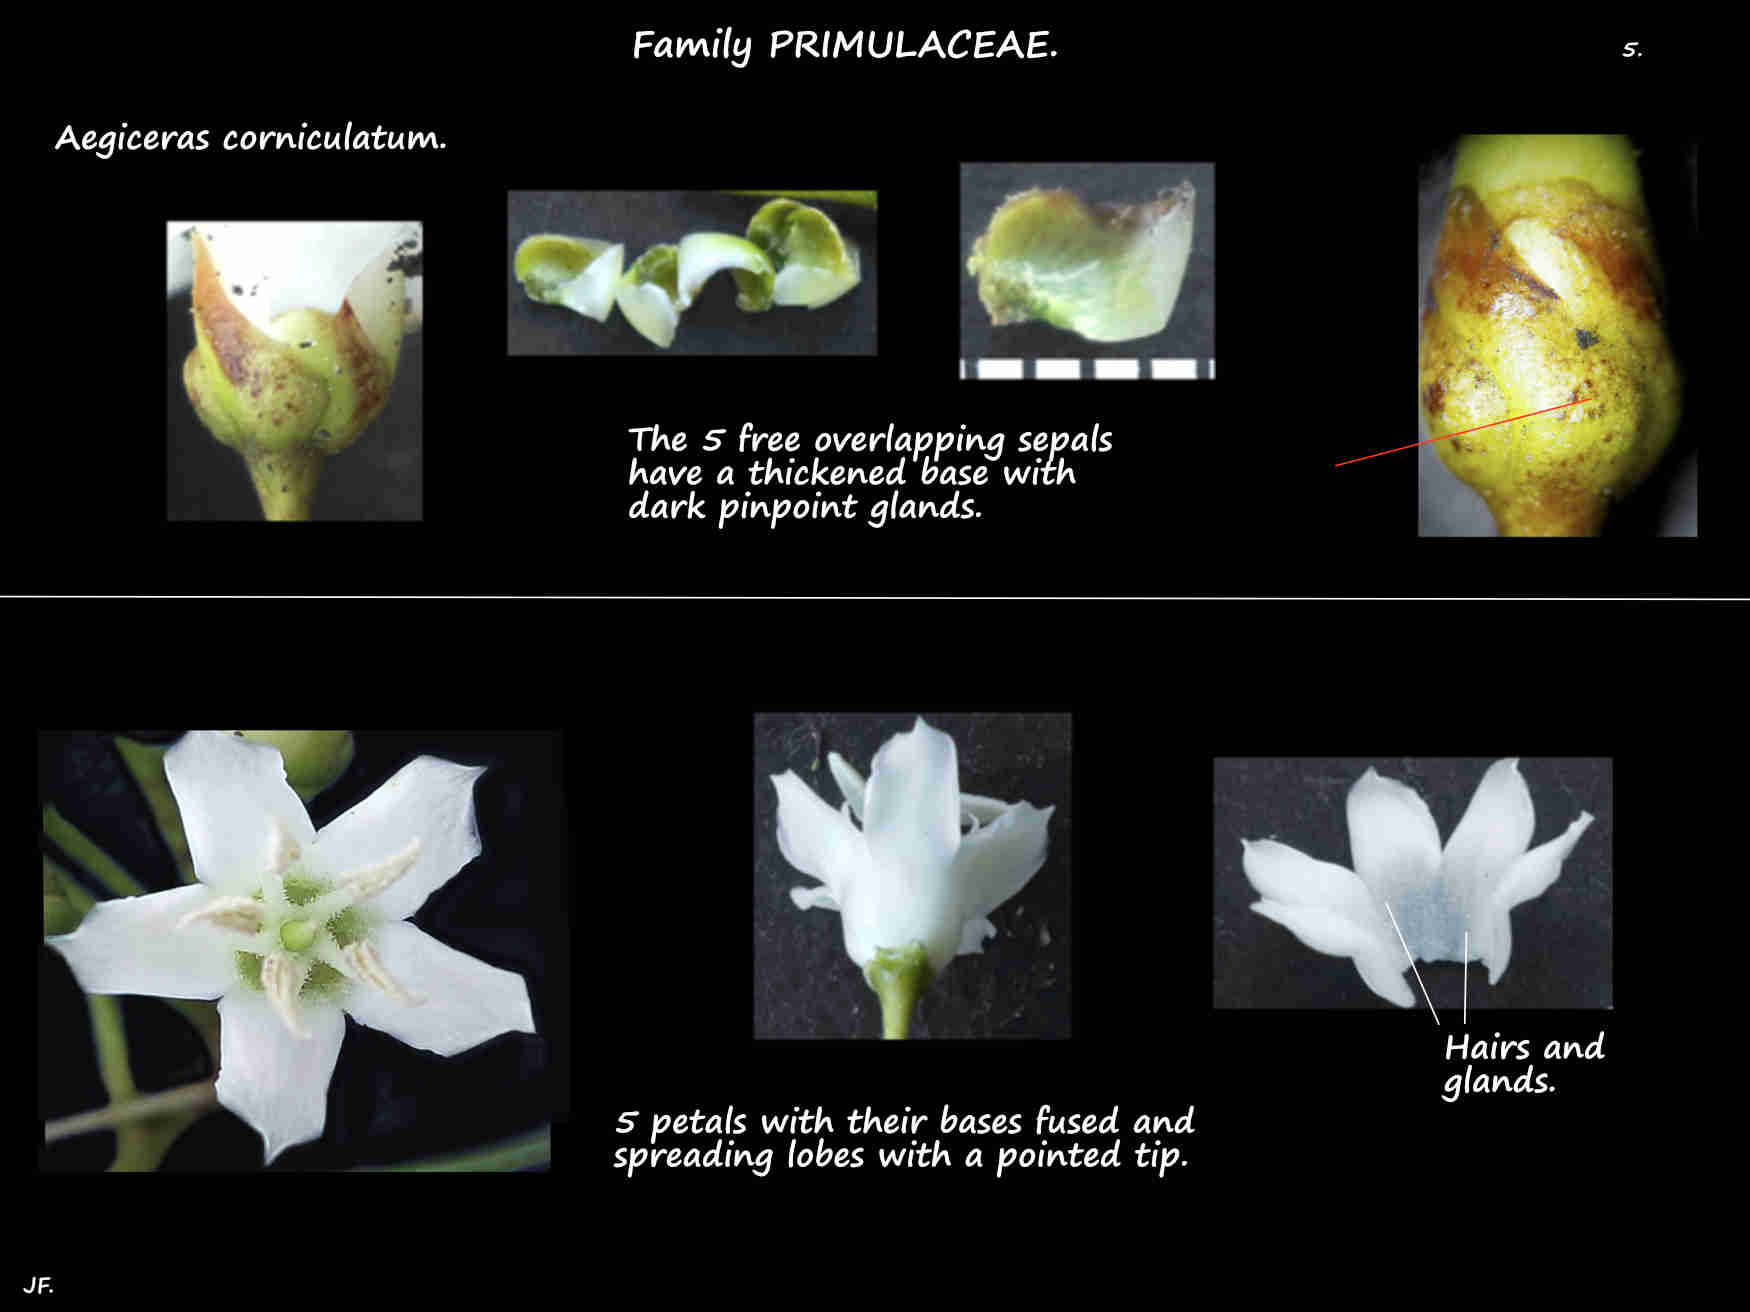 5 Aegiceras corniculatum sepals & petals